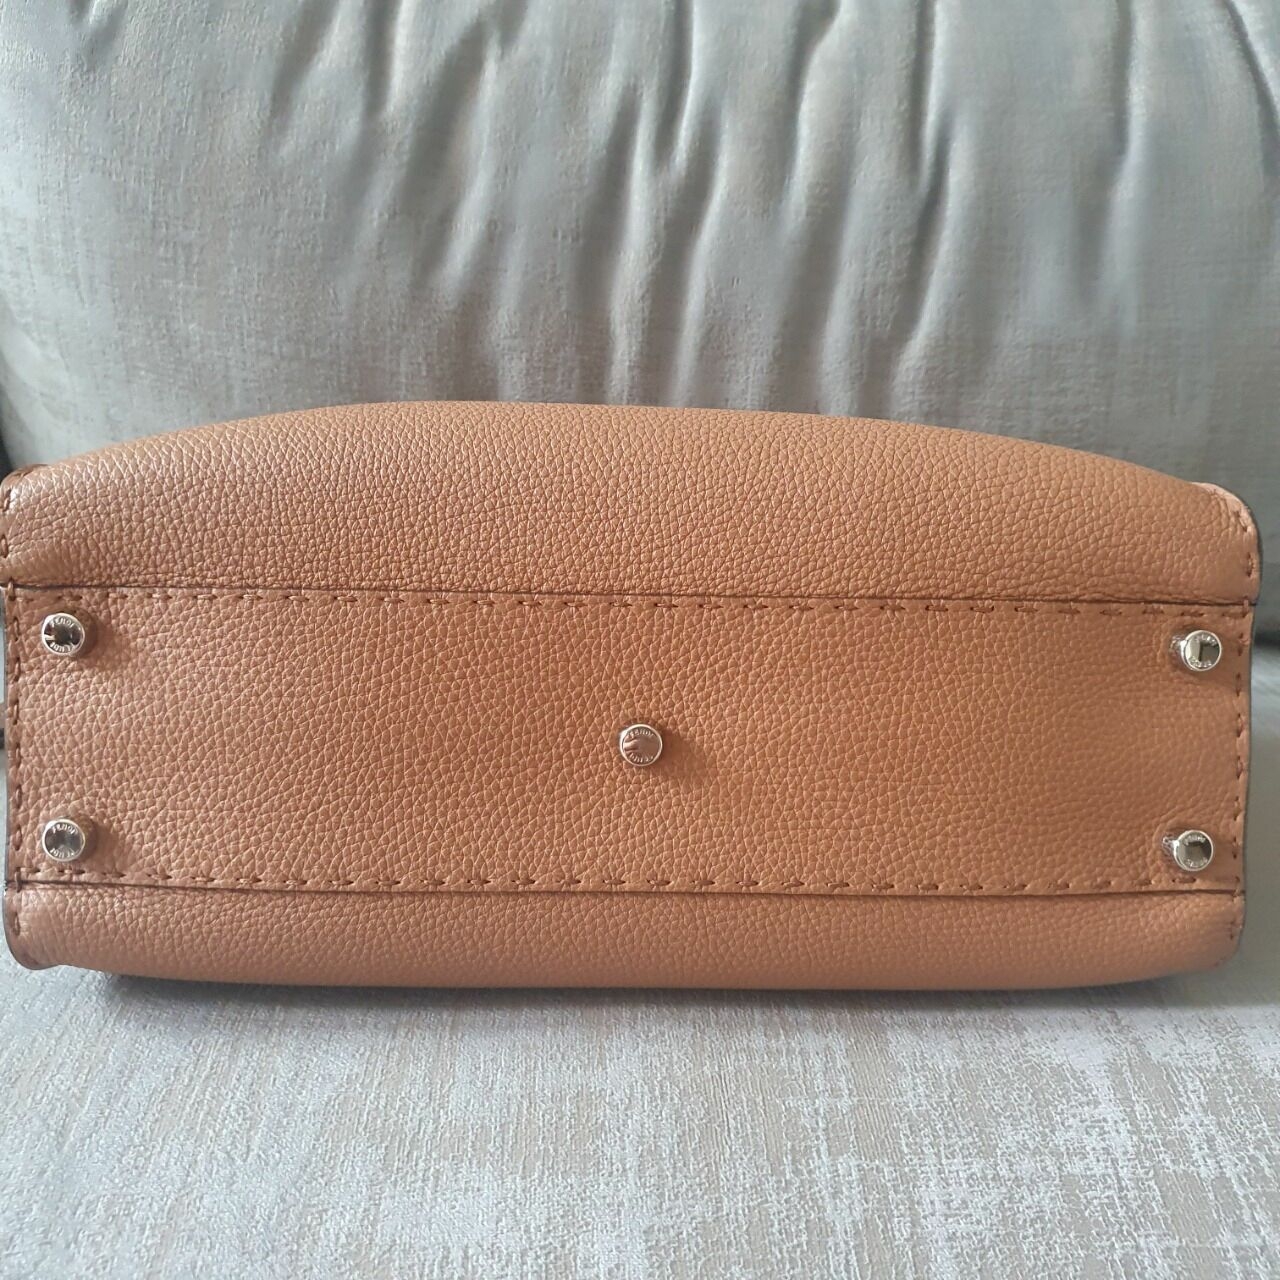 Fendi Brown Handbag